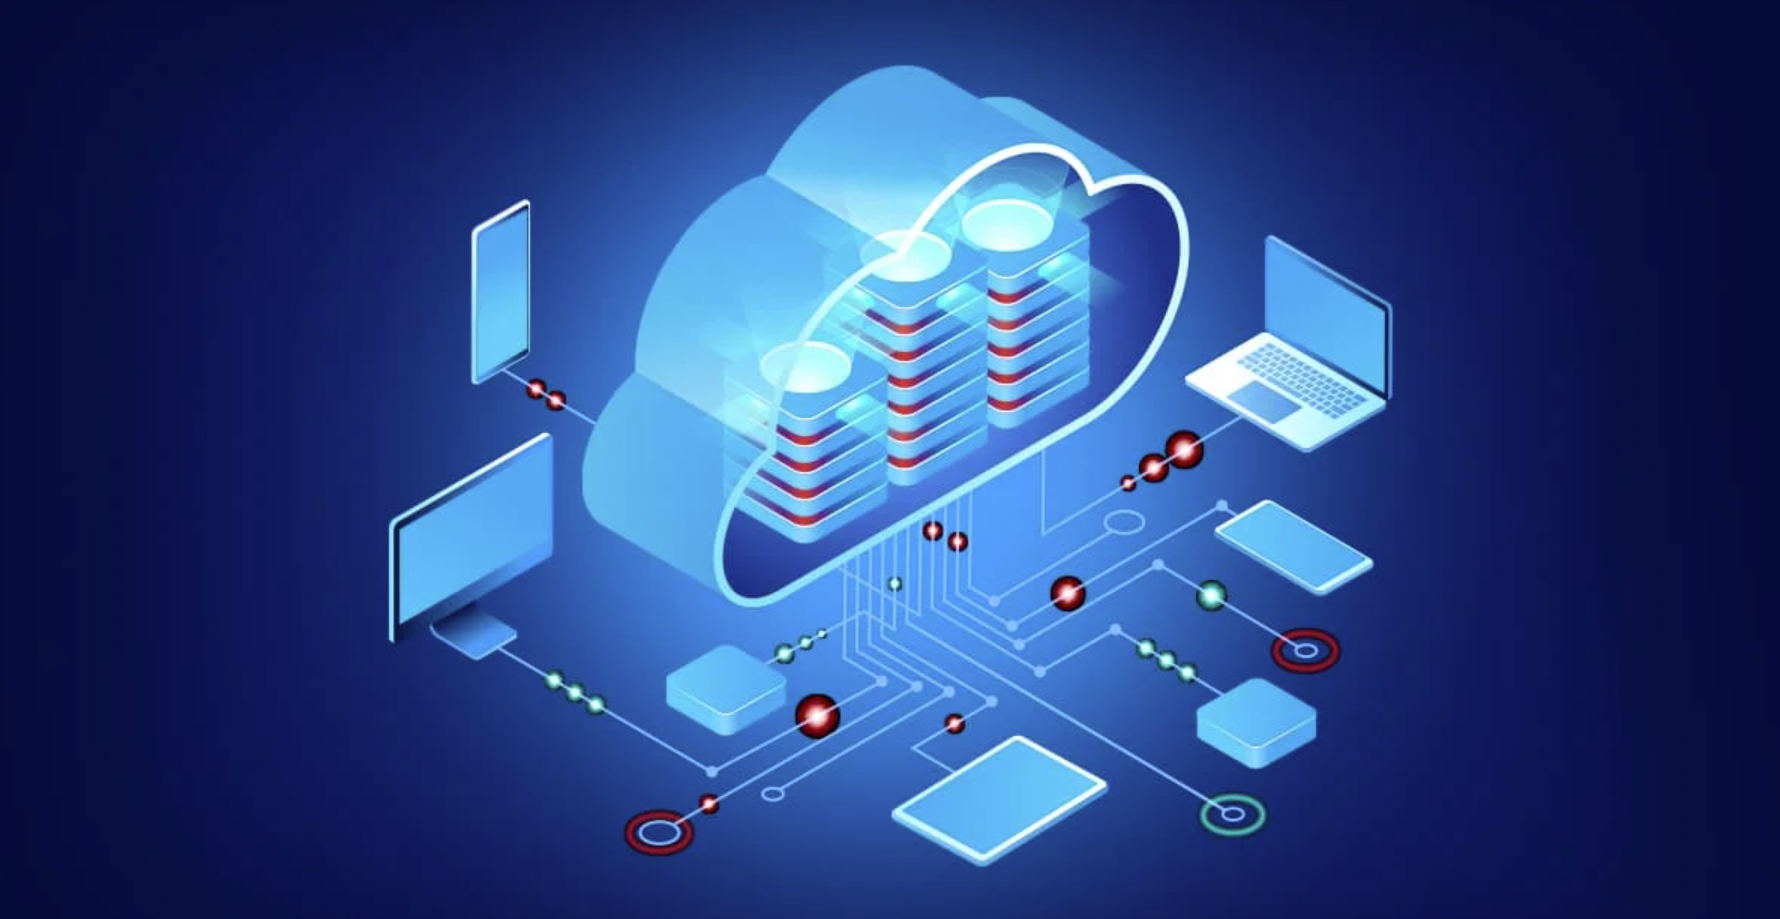 
Database as a service lưu trữ, quản lý và truy cập dữ liệu dựa trên cơ sở dữ liệu đám mây
